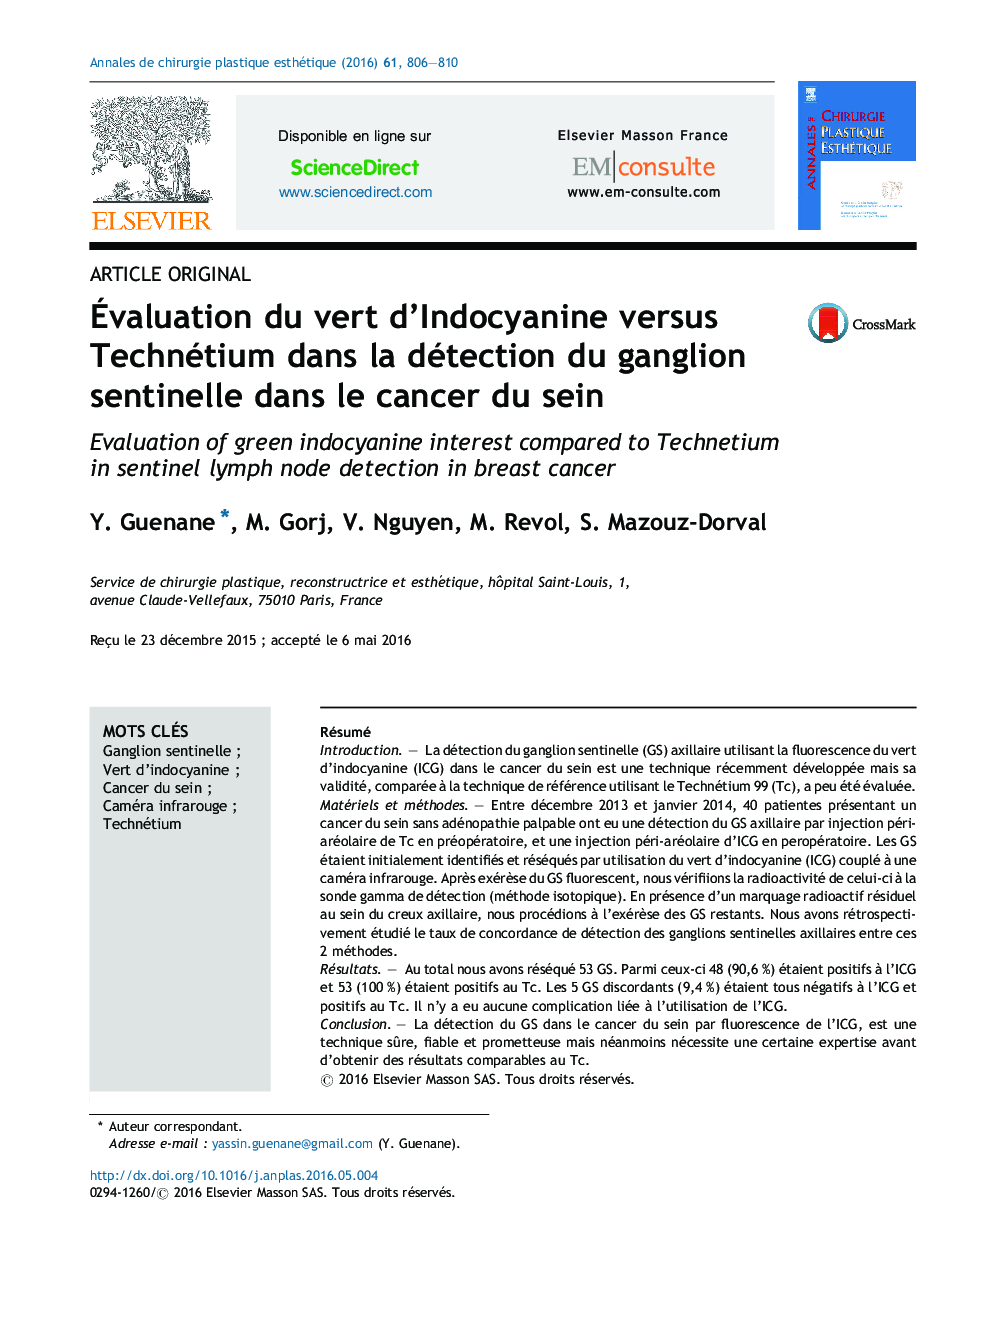 Ãvaluation du vert d'Indocyanine versus Technétium dans la détection du ganglion sentinelle dans le cancer du sein